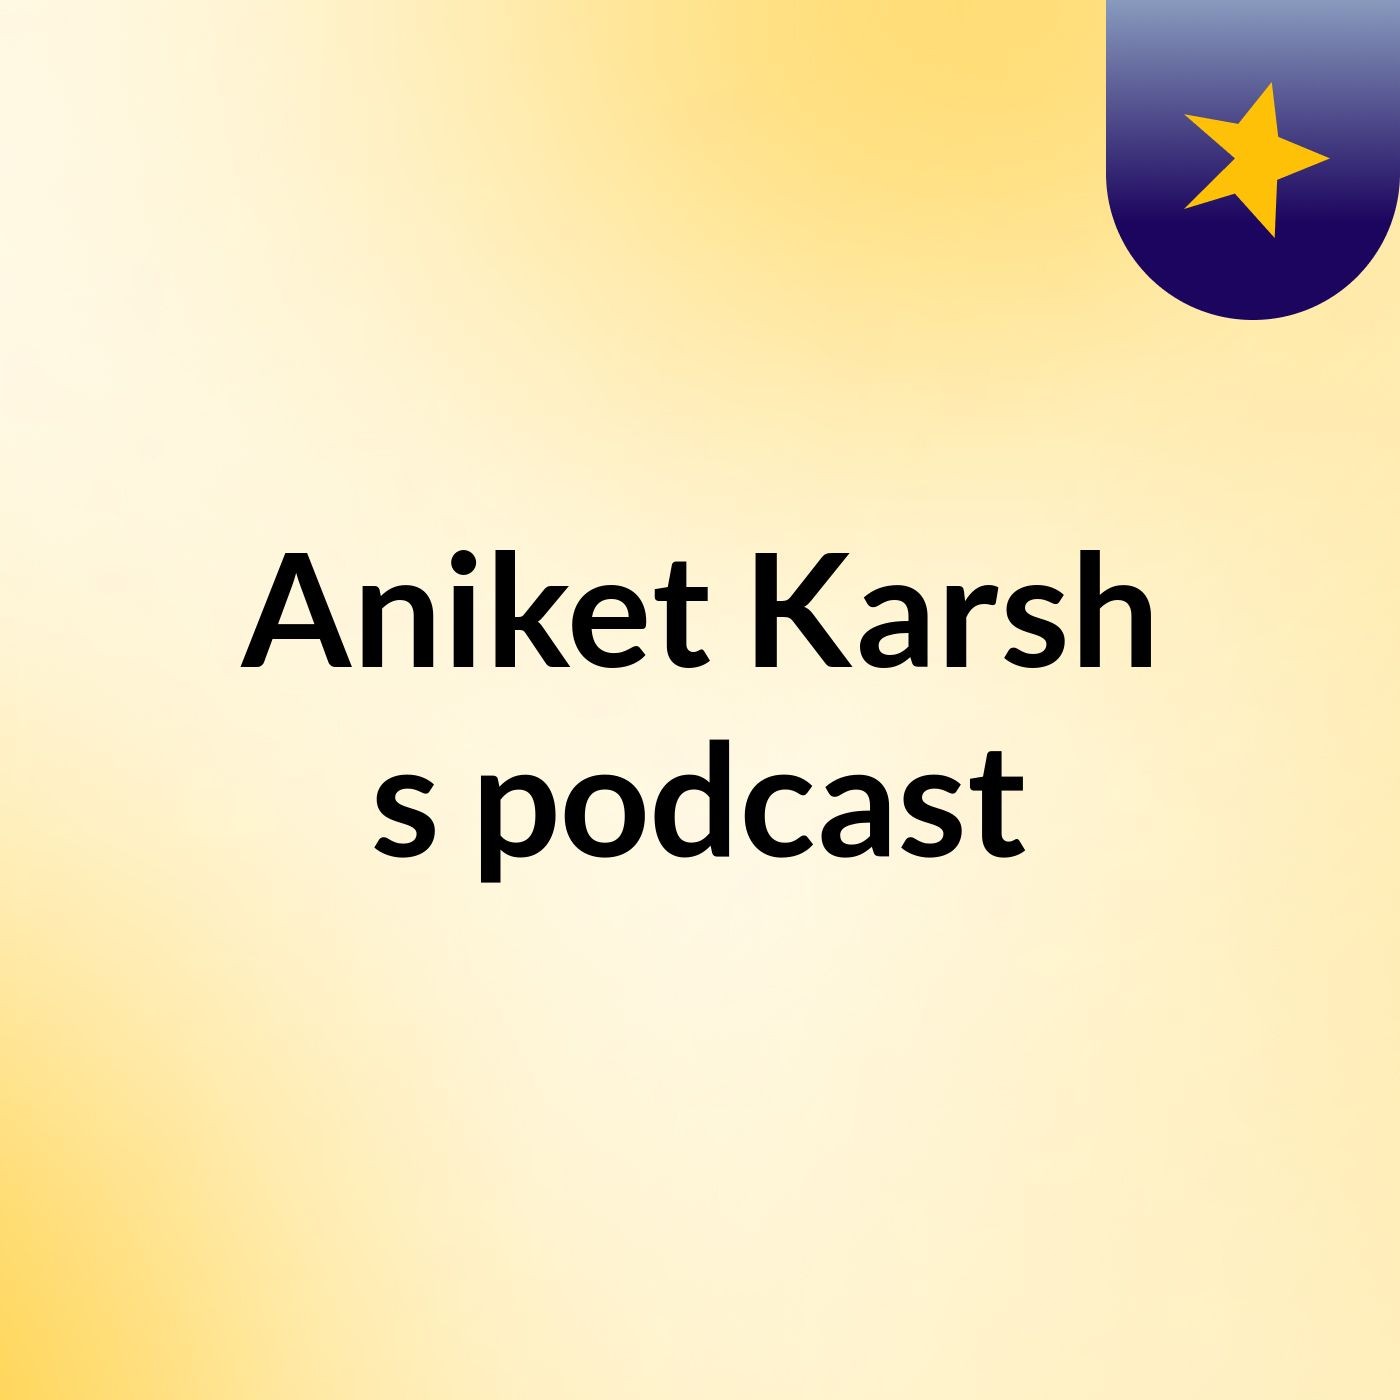 Aniket Karsh's podcast